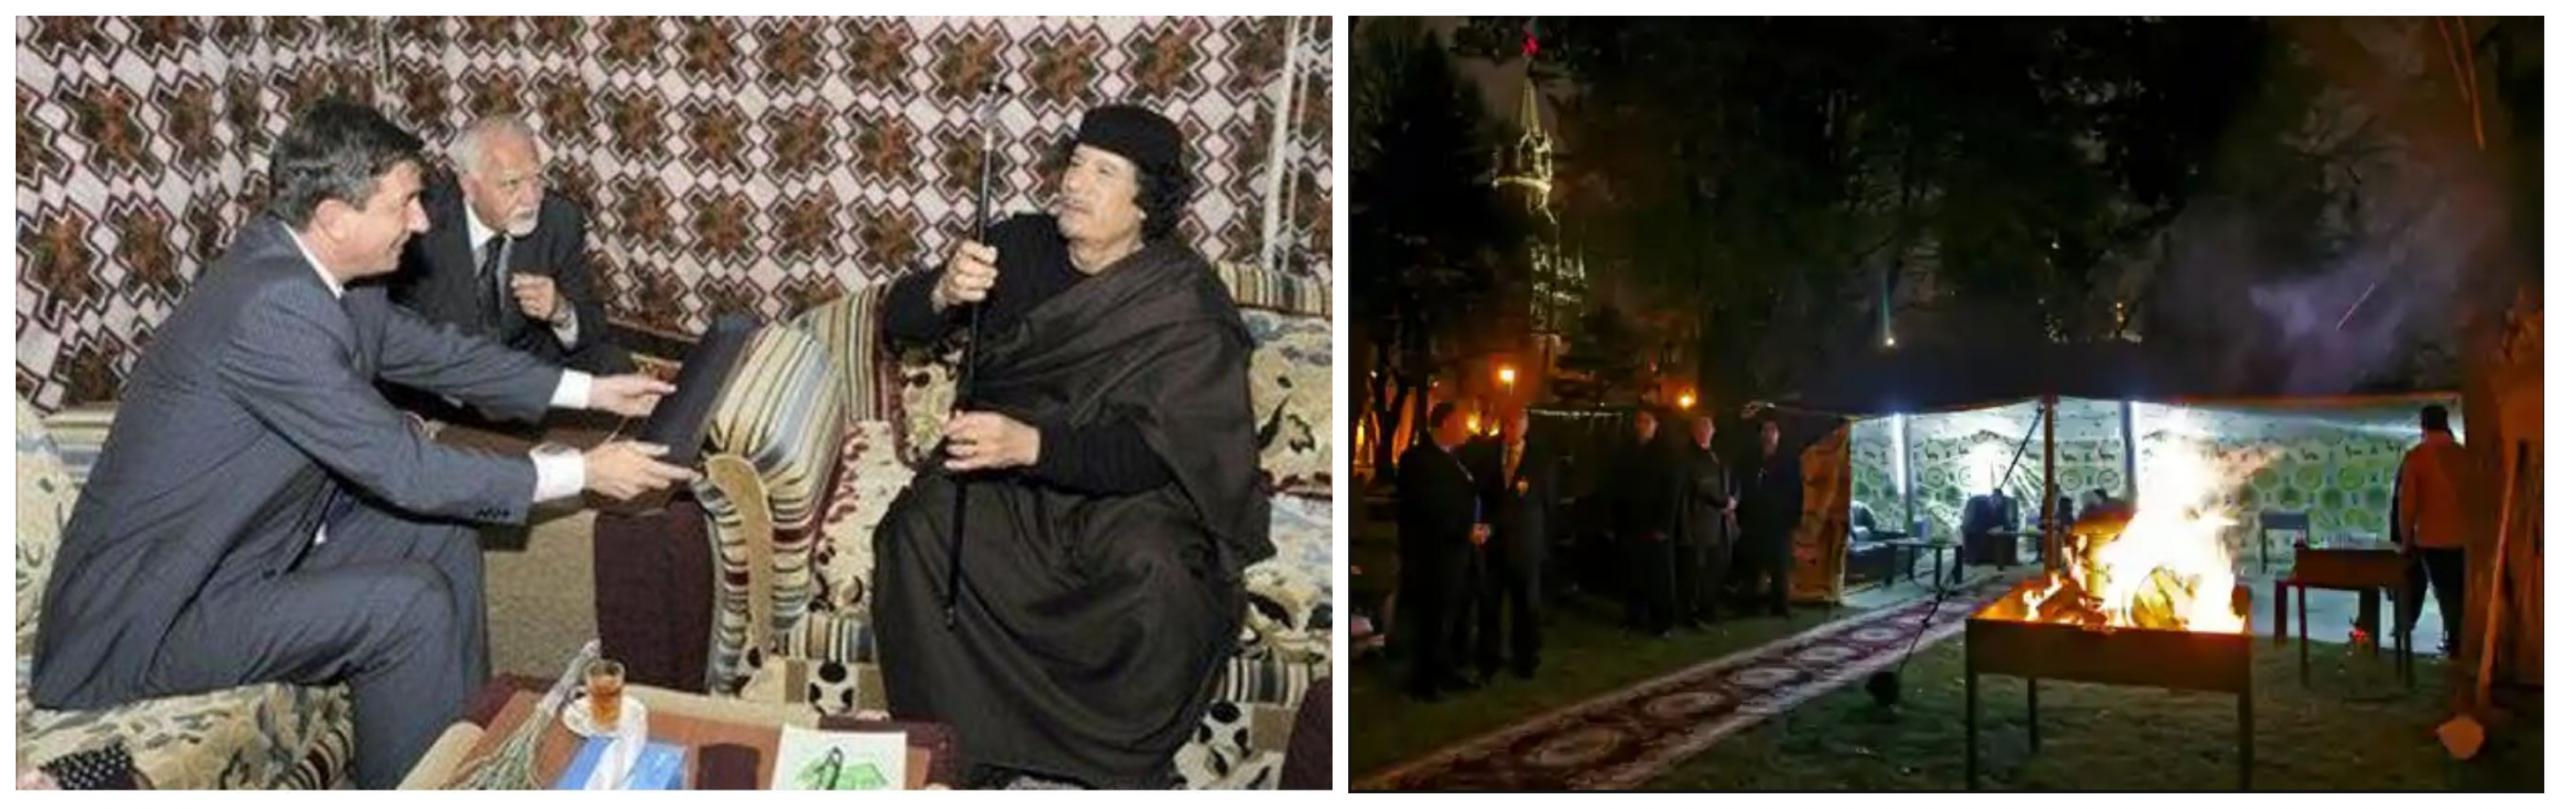 Prijatelja: Pahor v Gadafijevem šotoru (levo). Roštilj pred šotorom v dvorišču Kremlja. Vir: Twitter